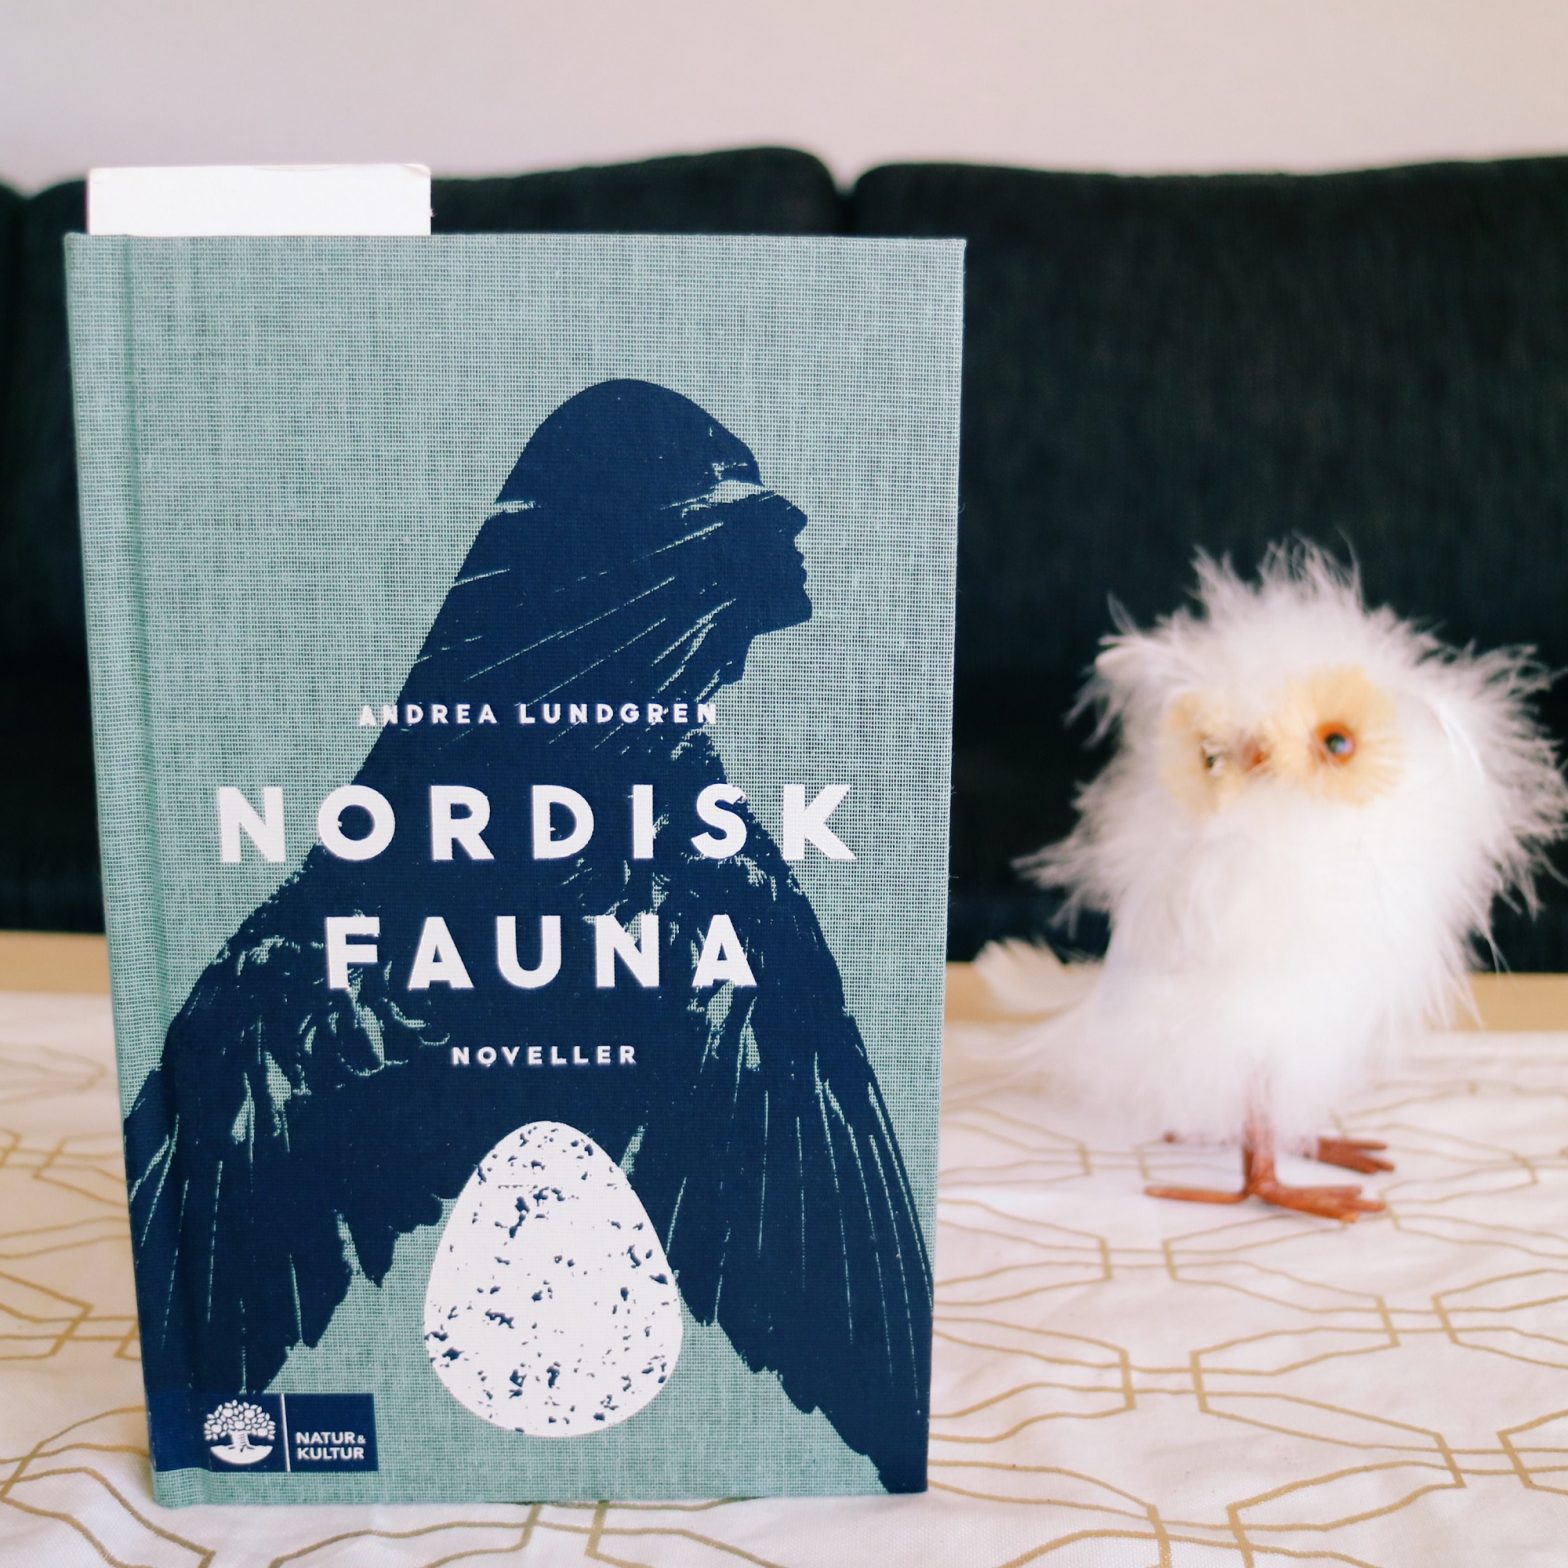 Nordisk fauna av Andrea Lundgren